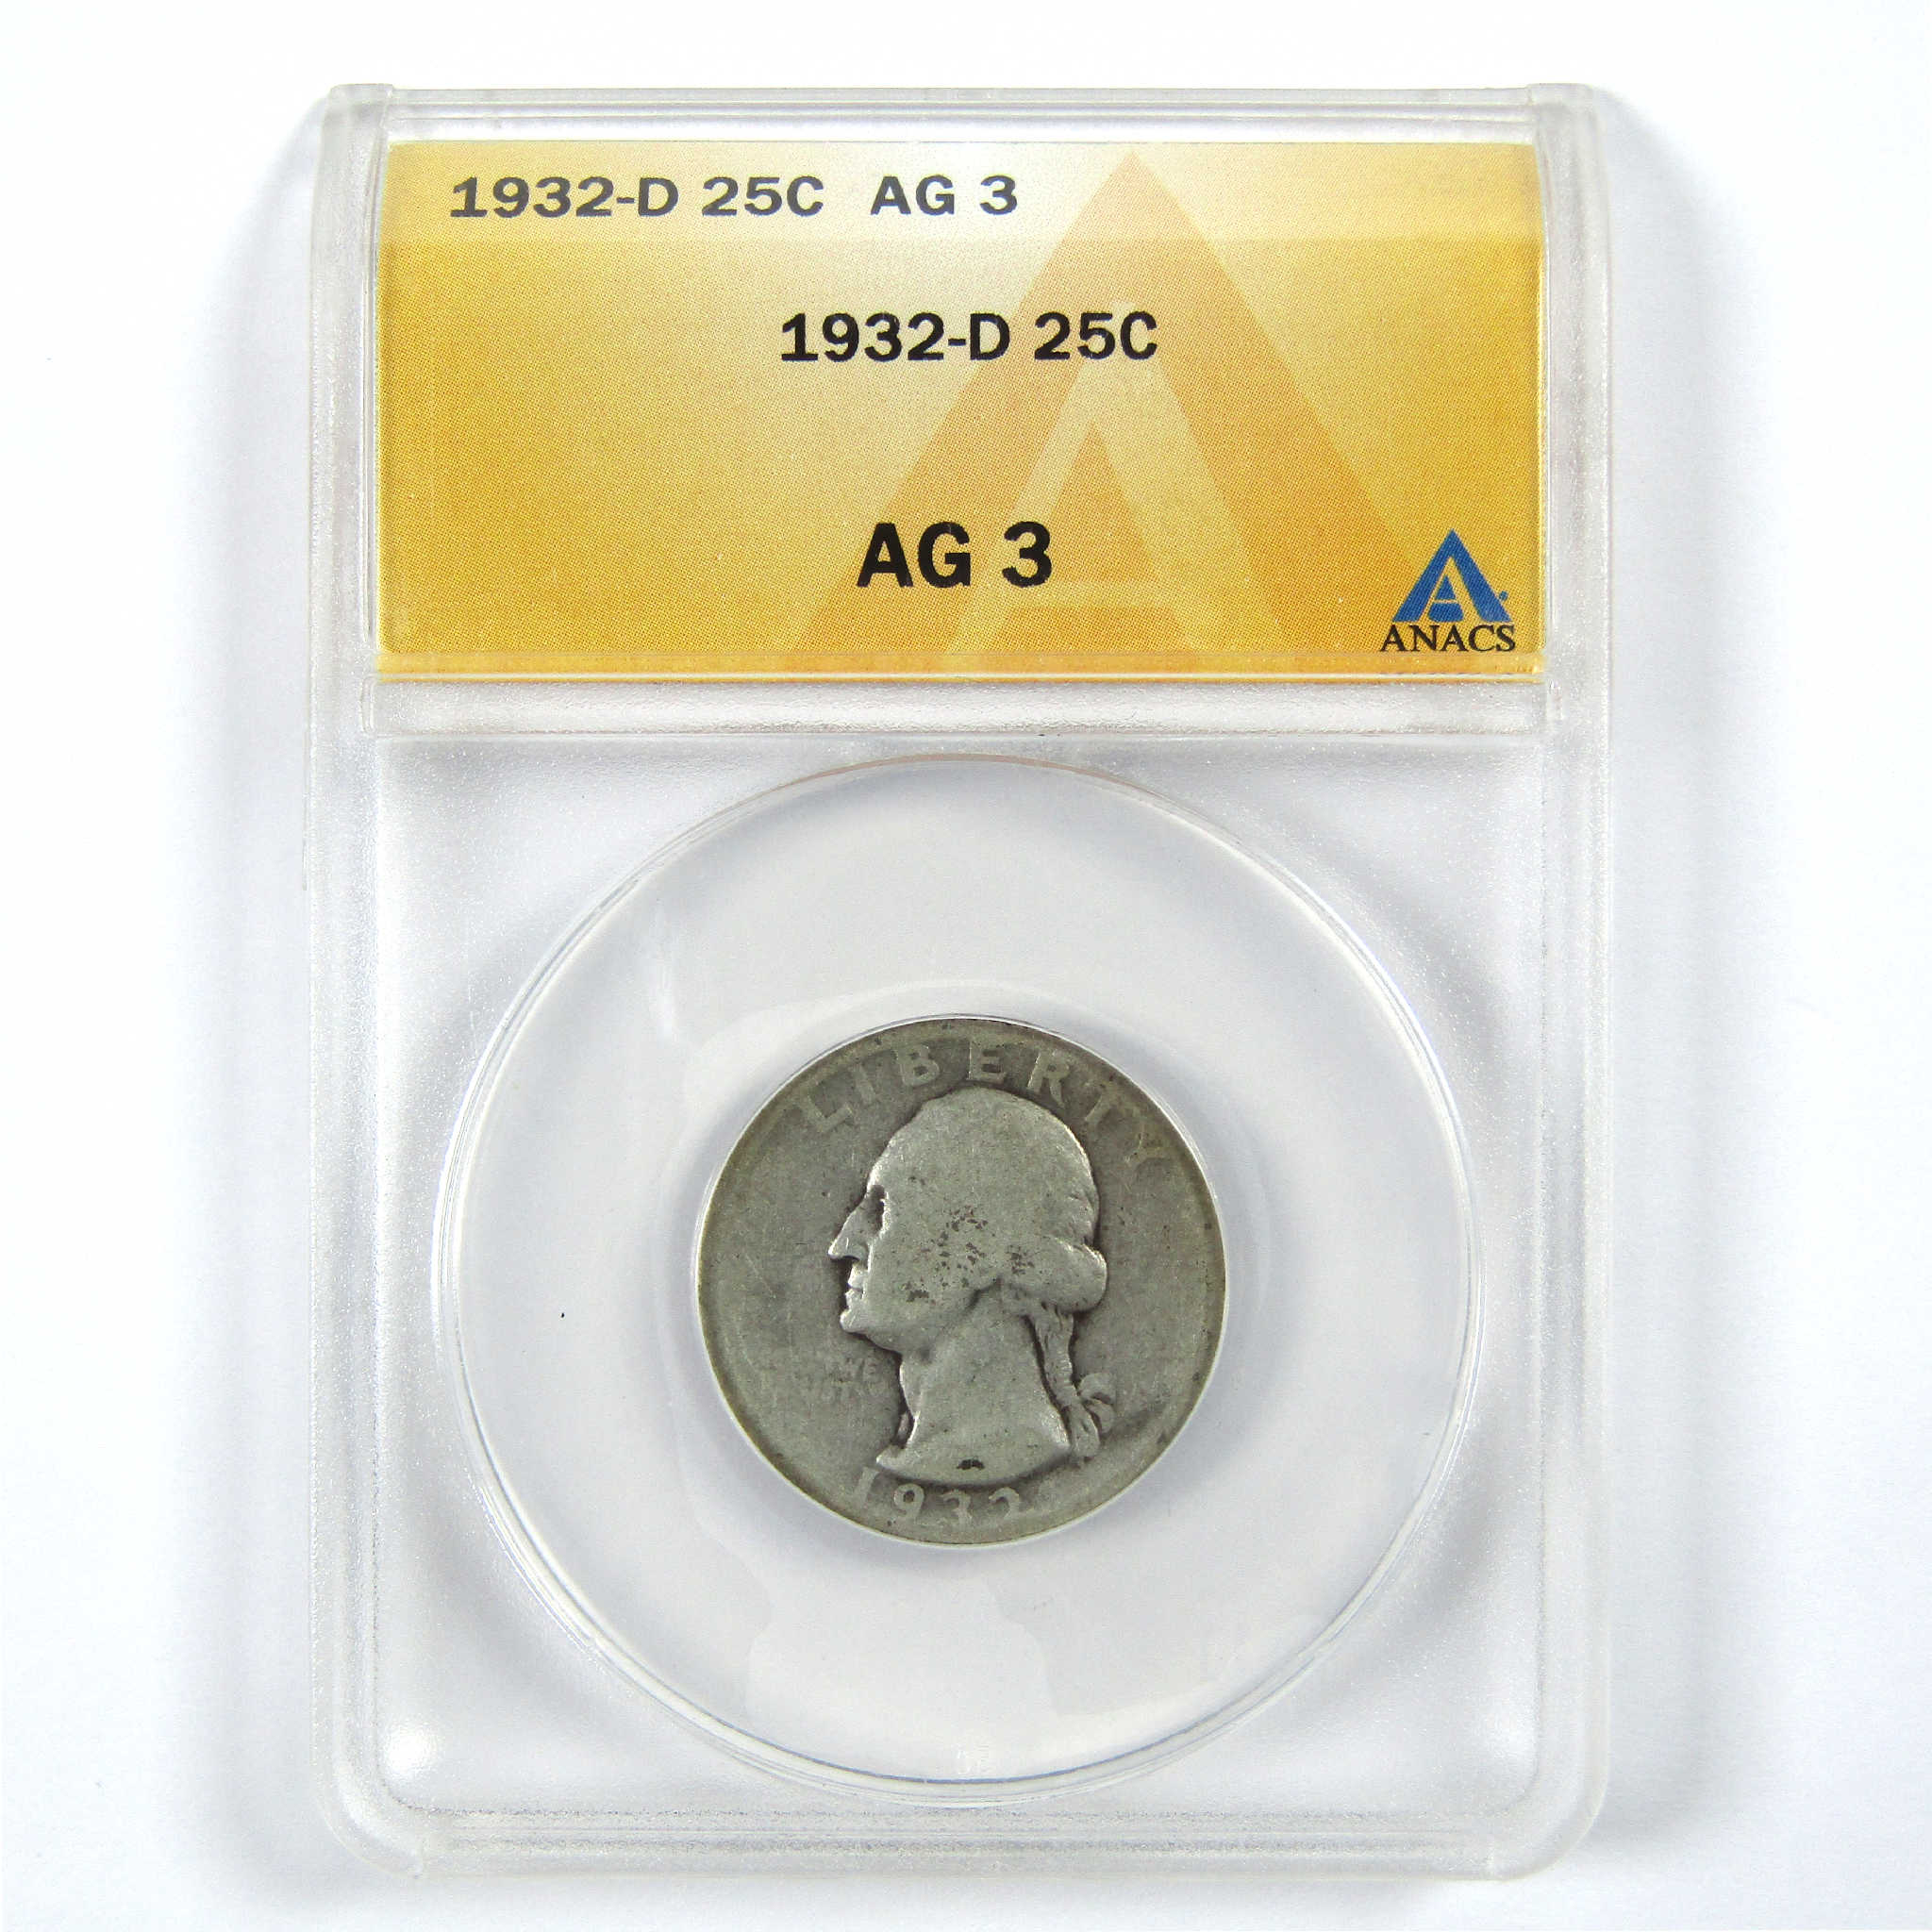 1932 D Washington Quarter AG 3 ANACS Silver 25c Coin SKU:I11922